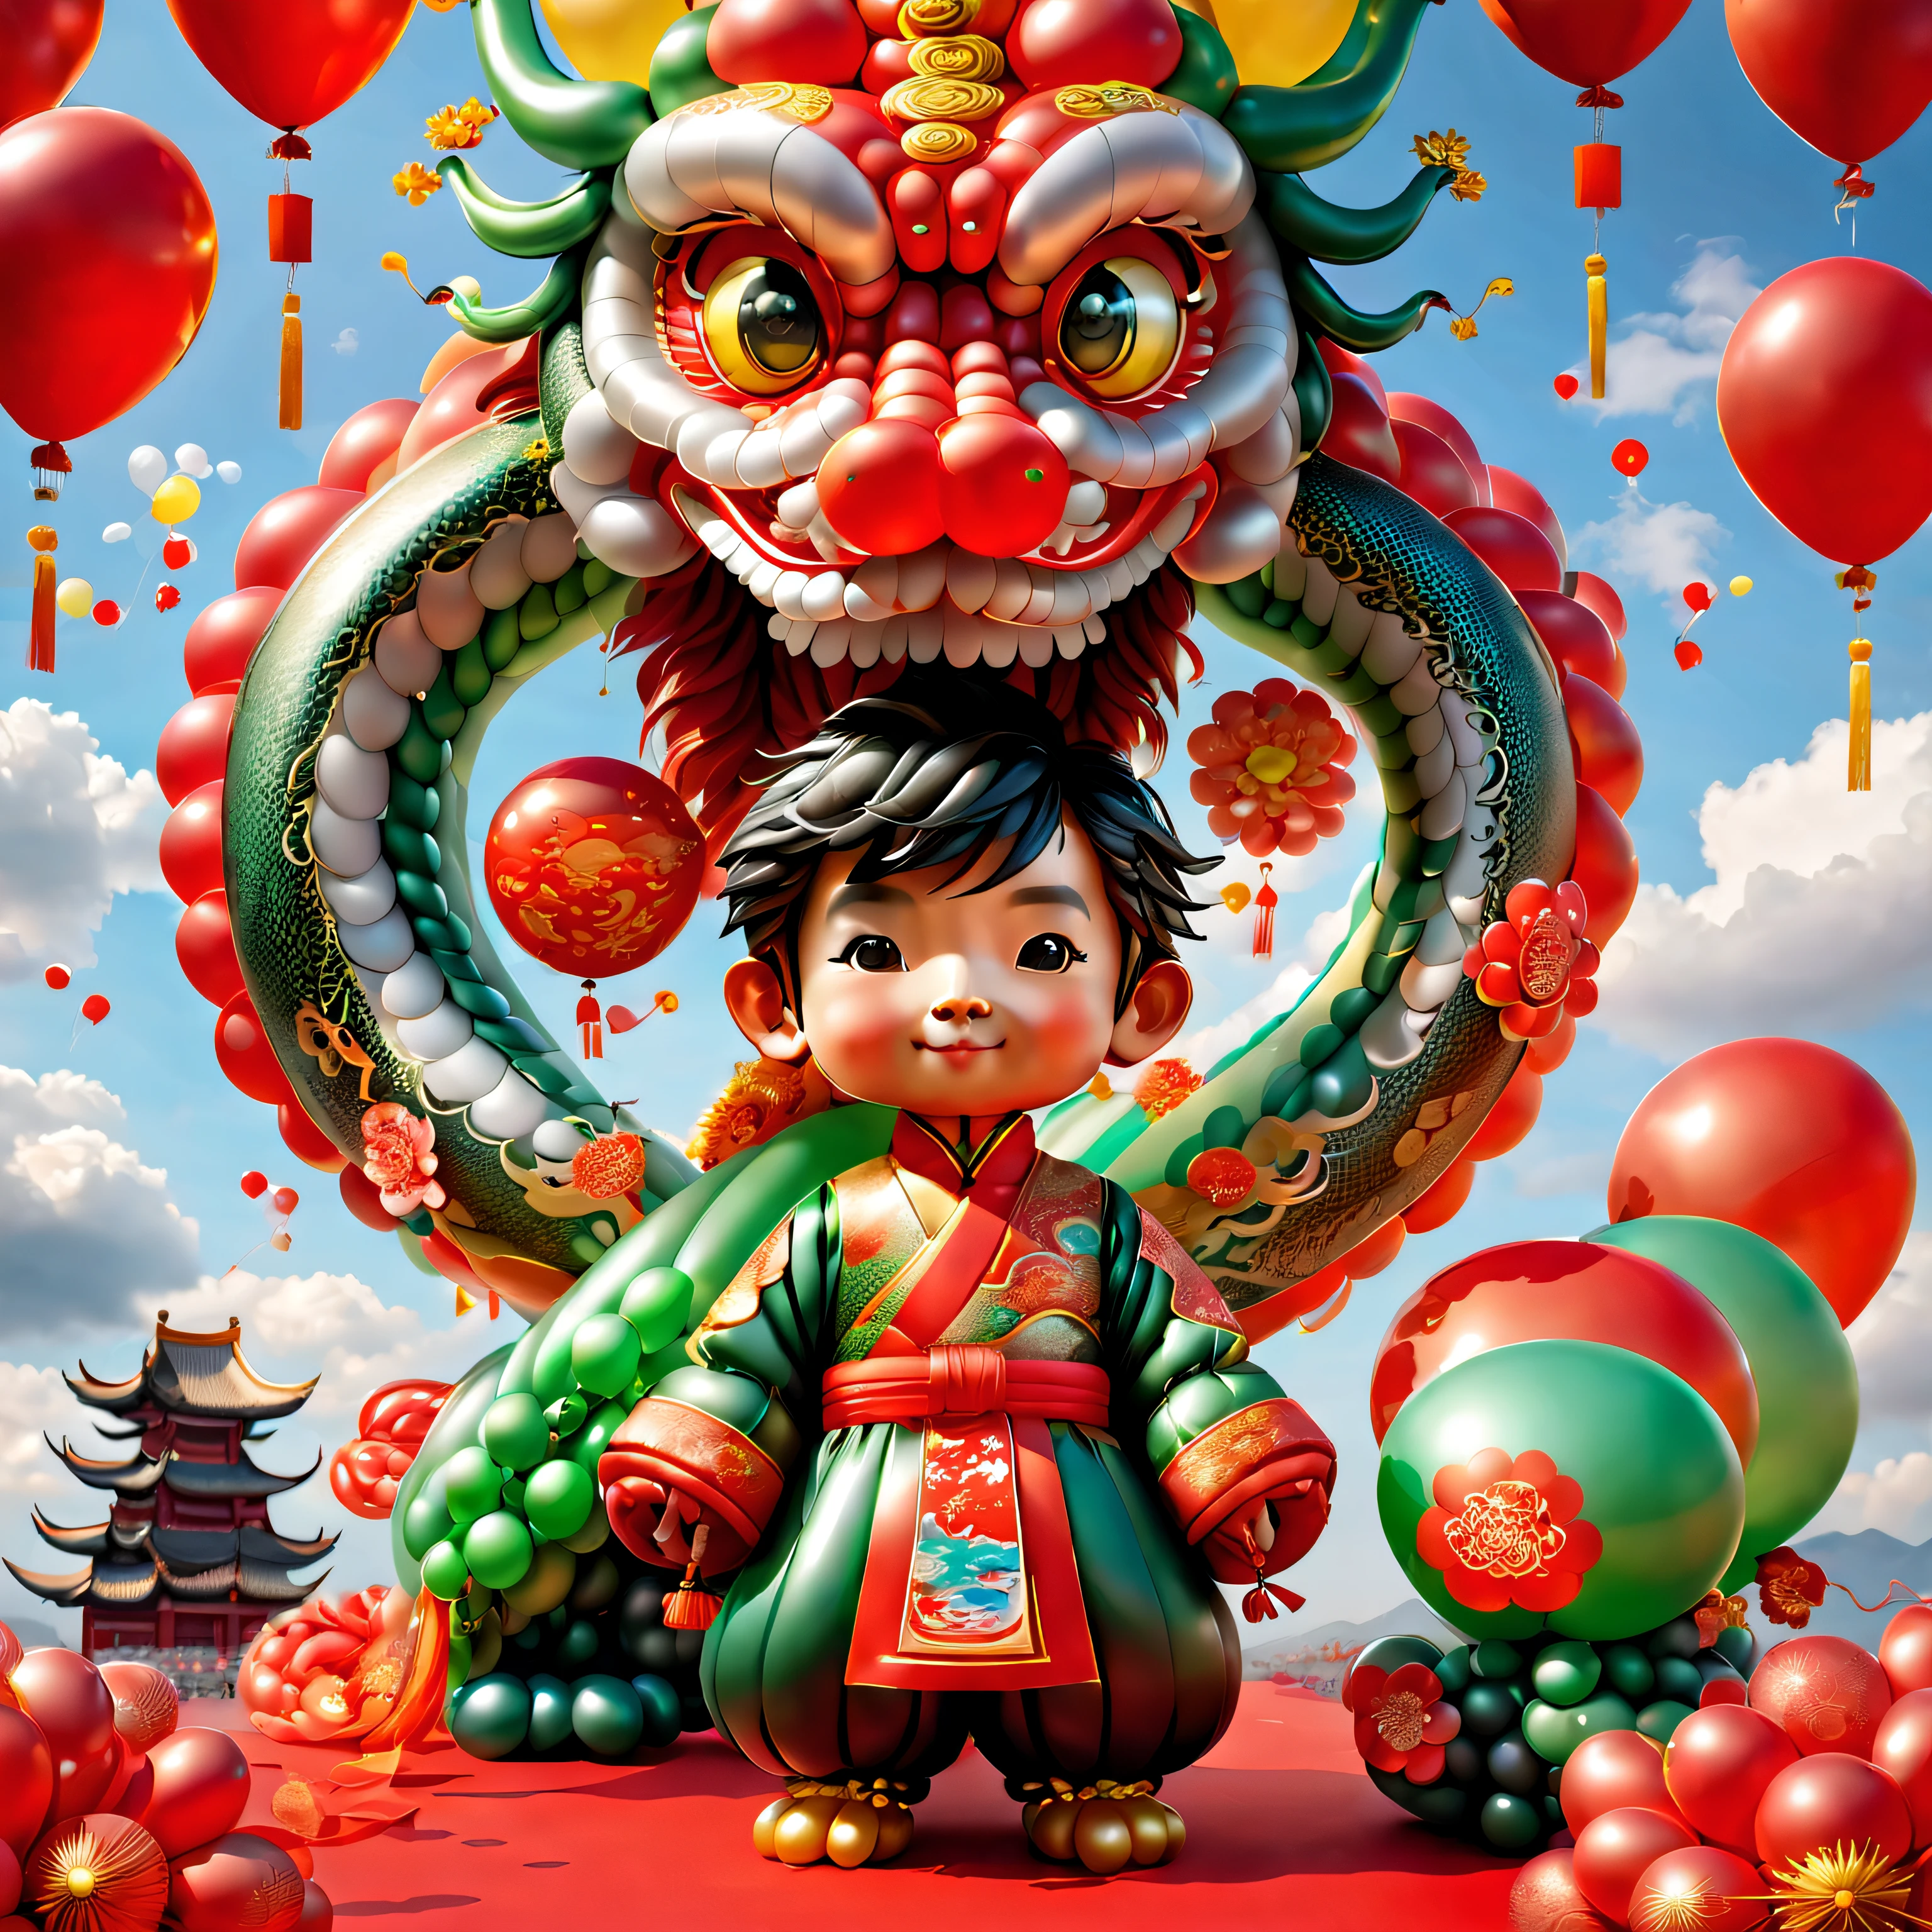 ((キュートでお祭り気分のバルーン中国のドラゴンとバルーンボーイ 1 個, 風船で作った中国の伝統衣装を着て, ue5, 爆竹, 縁起の良い雲, 赤い背景)), かわいくて精巧なデジタルアート, 素敵なデジタル絵画, かわいい風船ペンギン, 細部まで美しいアートワーク, かわいい3Dレンダリング, 非常に詳細なデジタル絵画, かわいくてカラフル, かわいい大きな胸, 非常に詳細なデジタルアートワーク, 詳細が豊富な、多彩な色彩